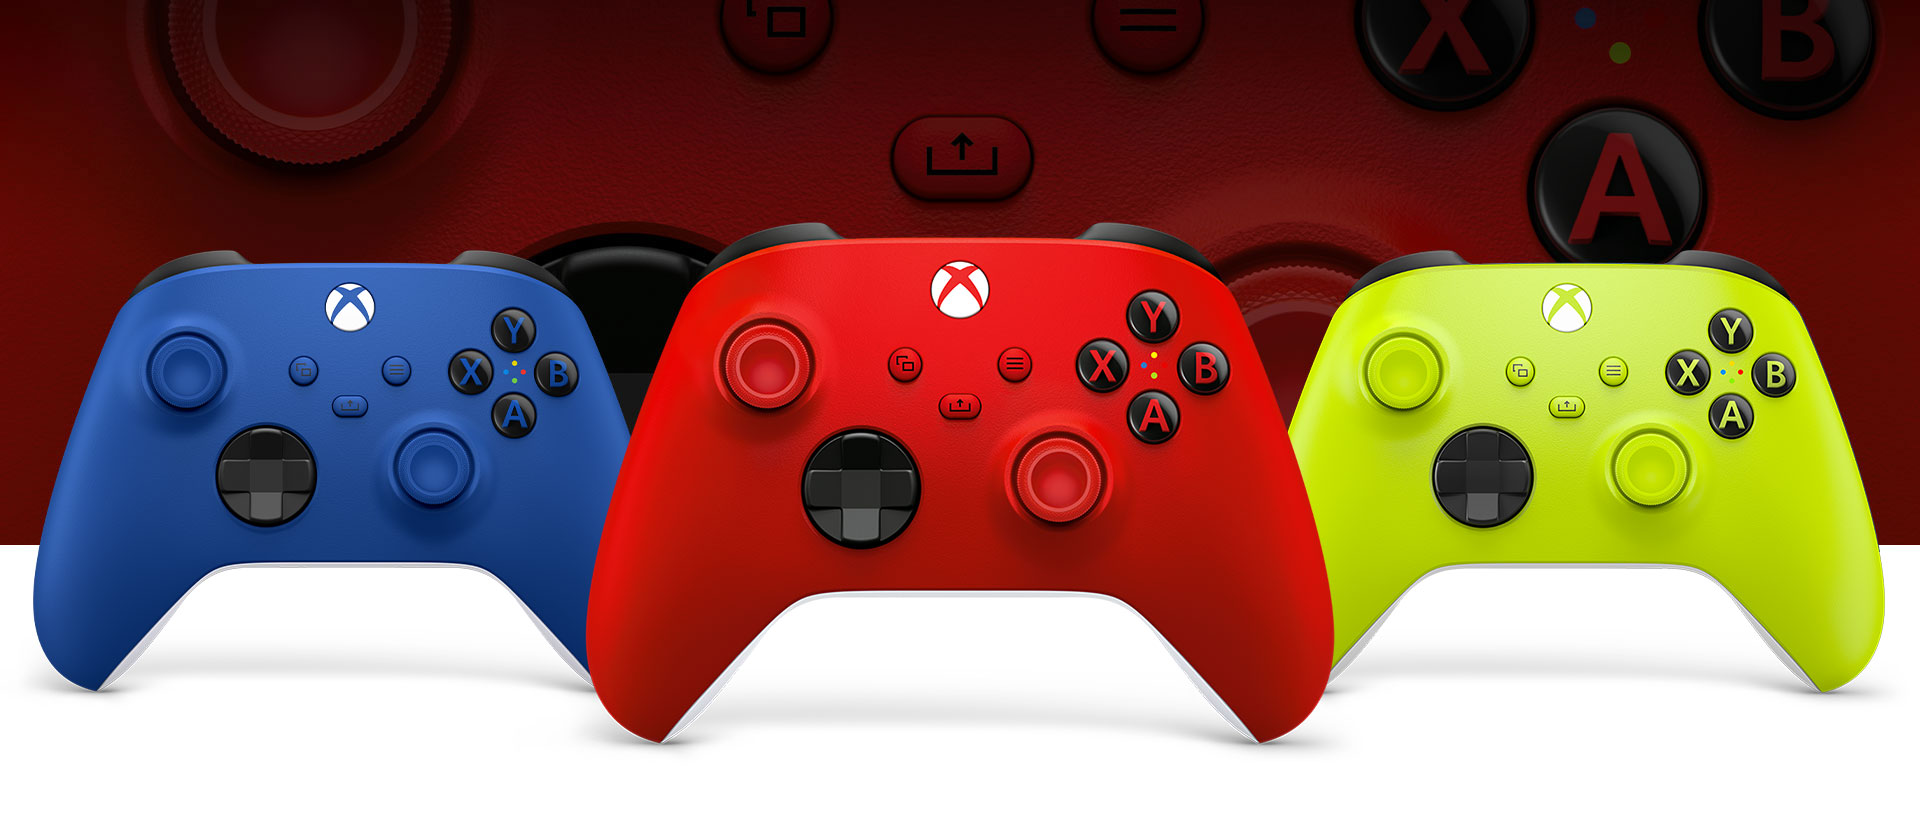 Ovládač Xbox Pulse Red v popredí, vľavo je ovládač Shock Blue a vpravo ovládač Electric Volt